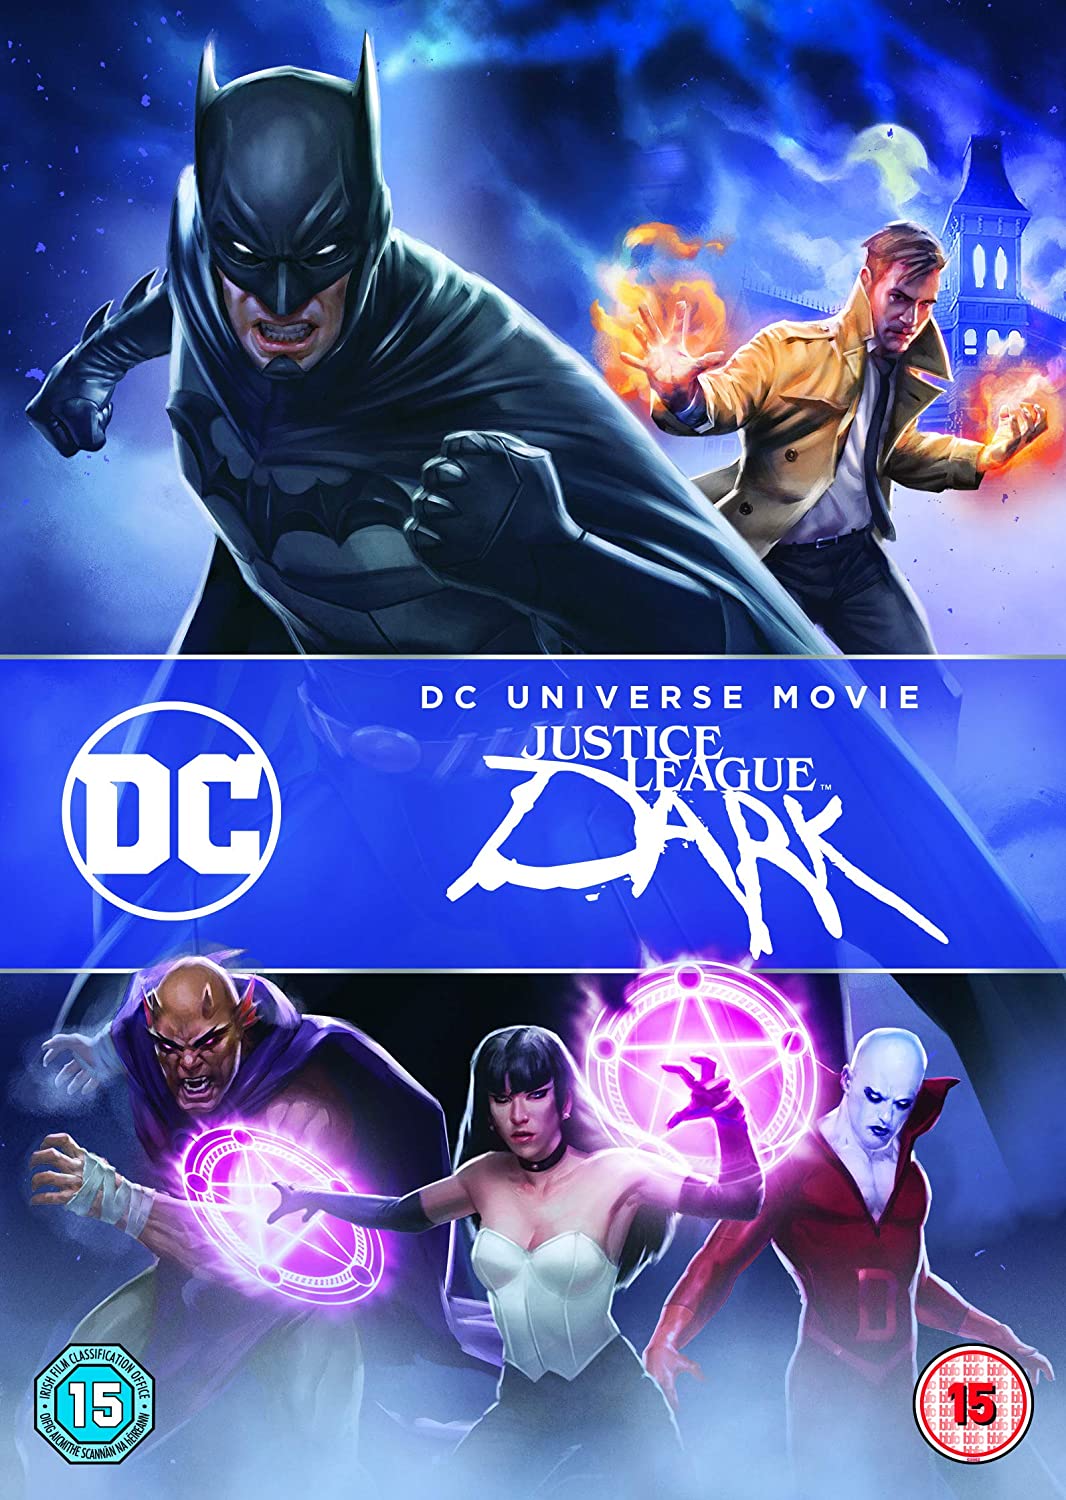 Justice League Dark [2020] [2016] - Action/Sci-fi [DVD]